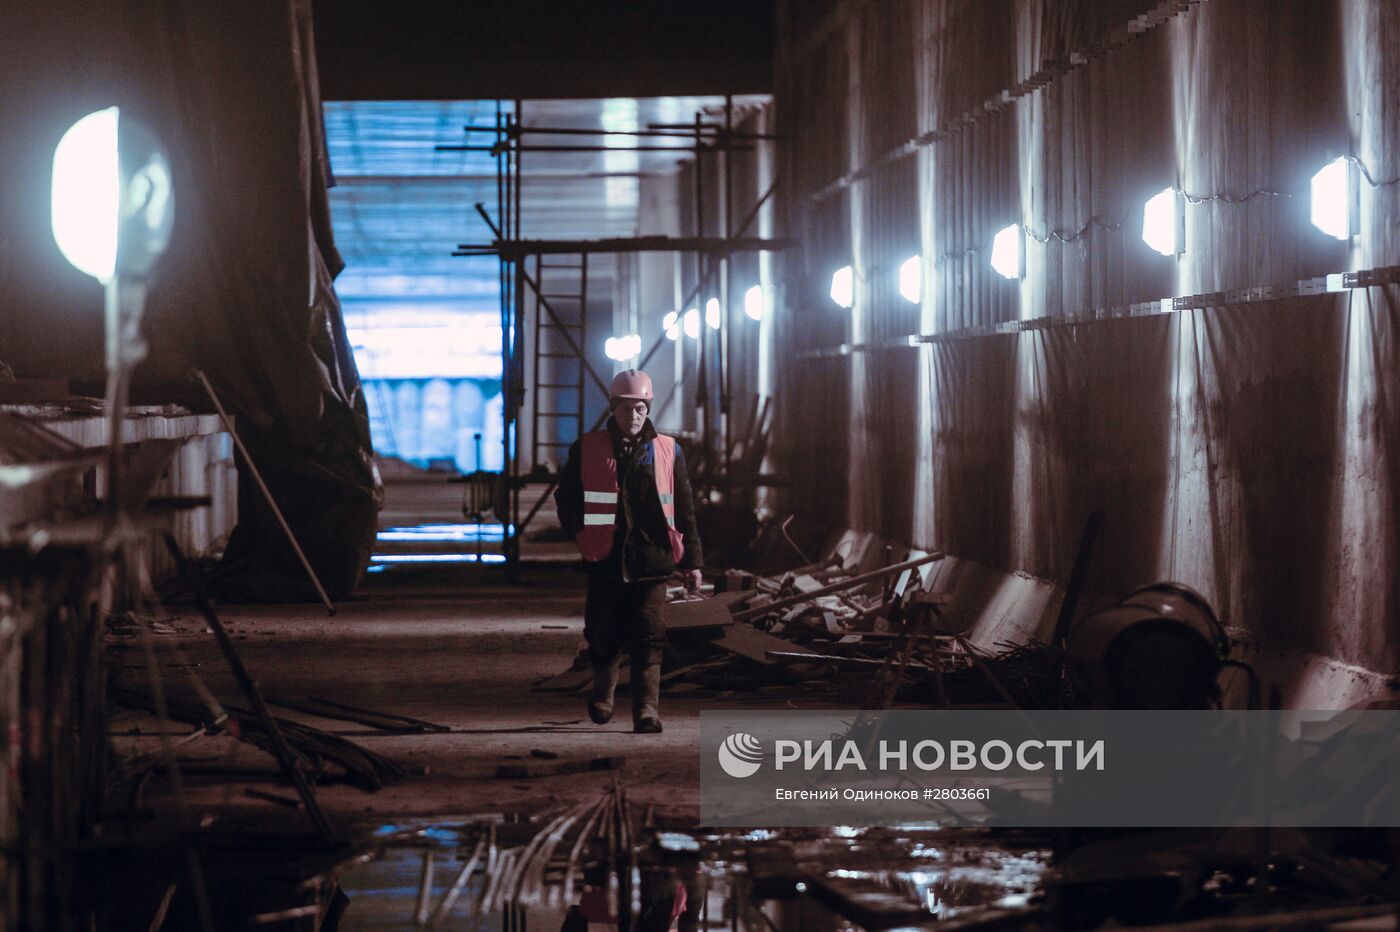 Строительство станции метро "Хорошевская" Третьего пересадочного контура